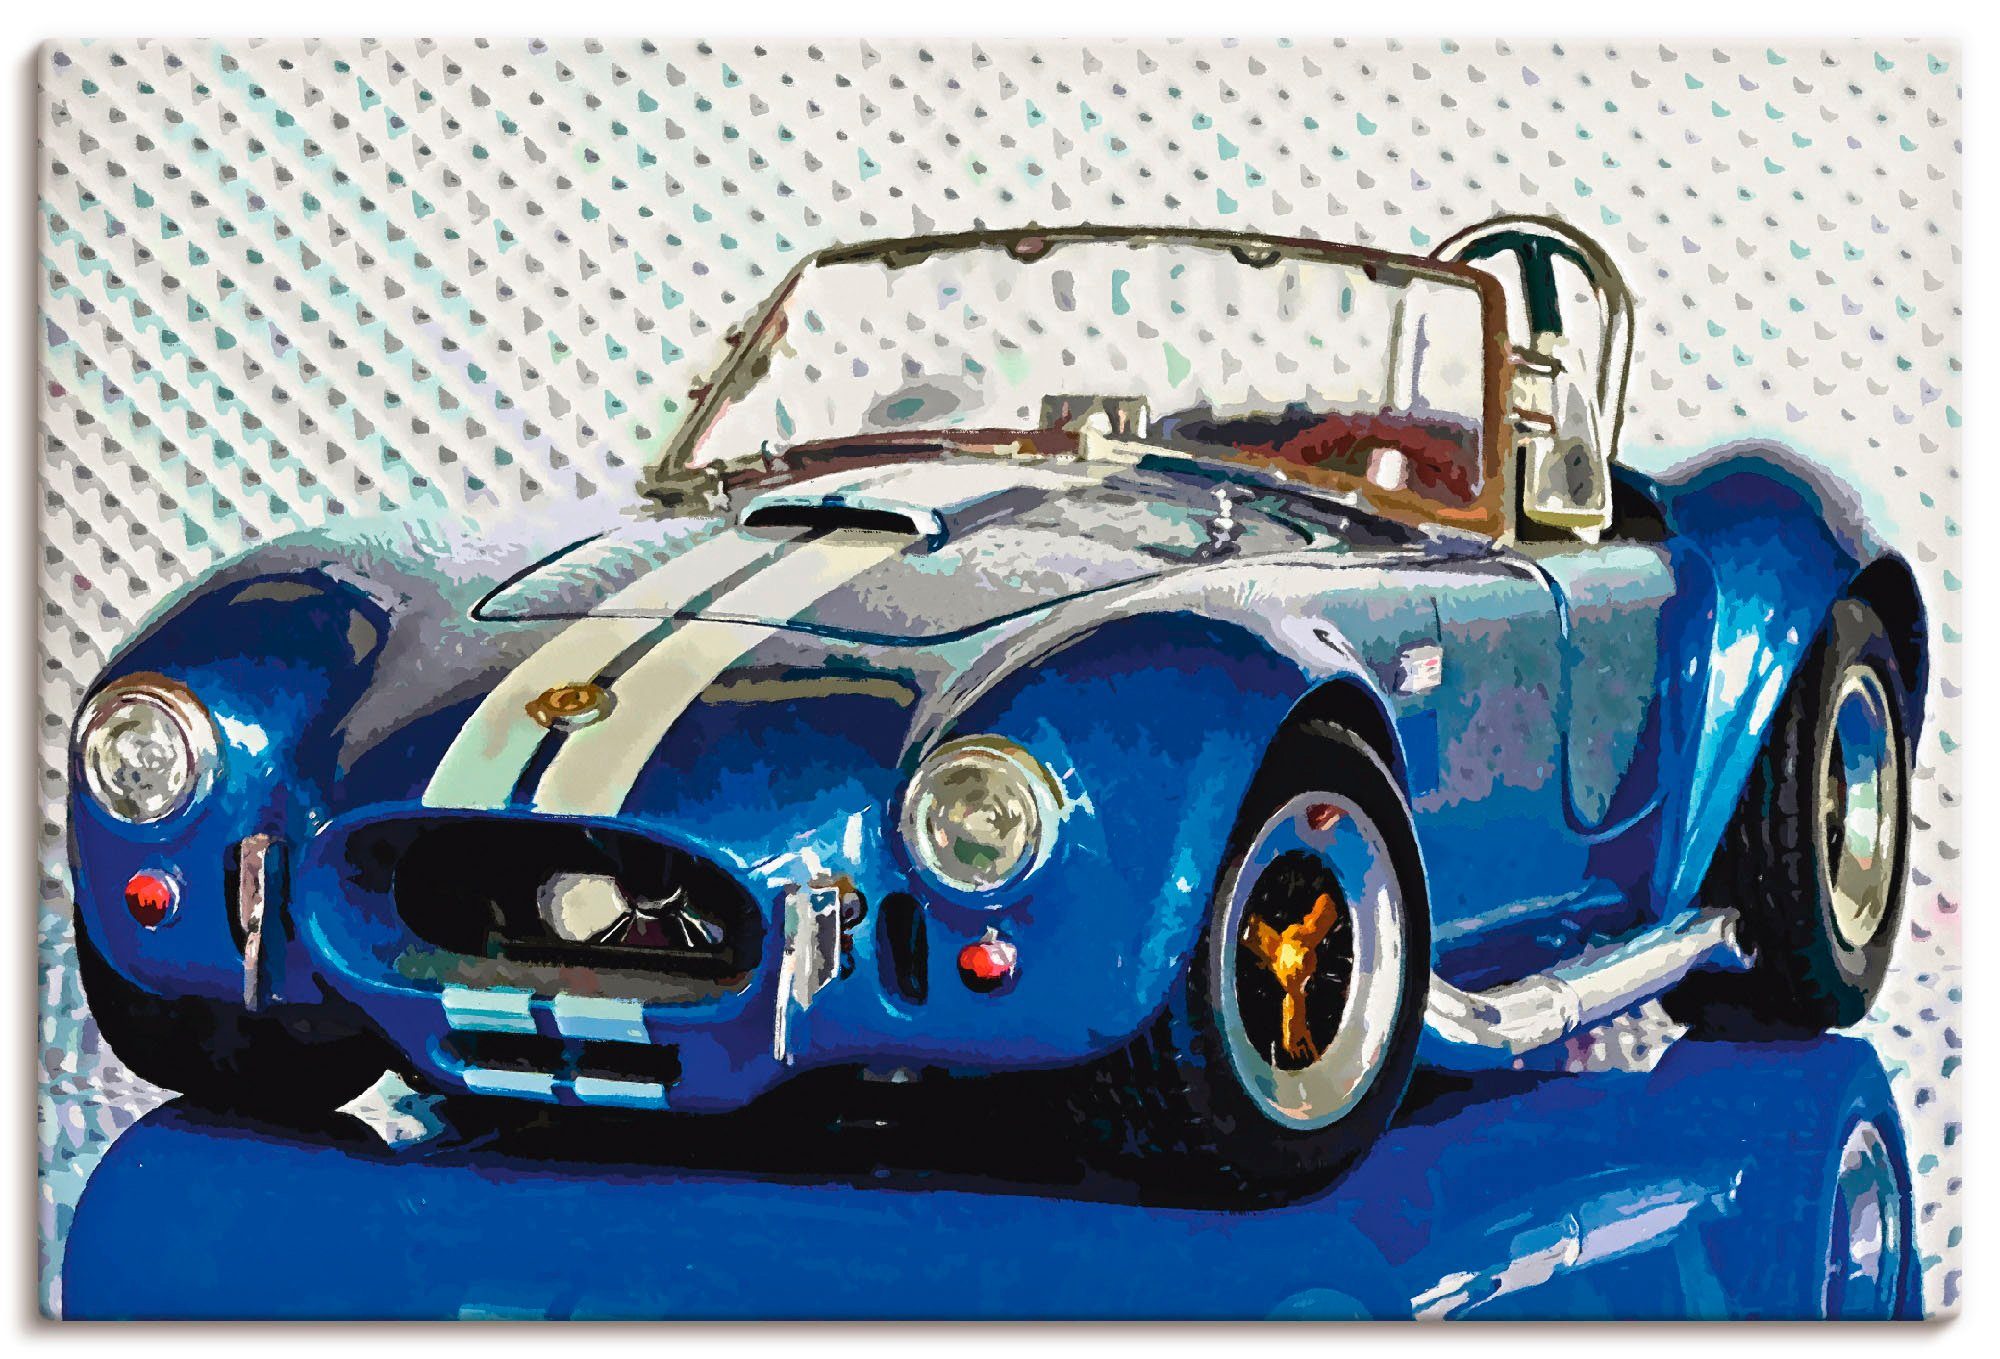 Artland Artprint Shelby Cobra blauw in vele afmetingen & productsoorten - artprint van aluminium / artprint voor buiten, artprint op linnen, poster, muursticker / wandfolie ook ges